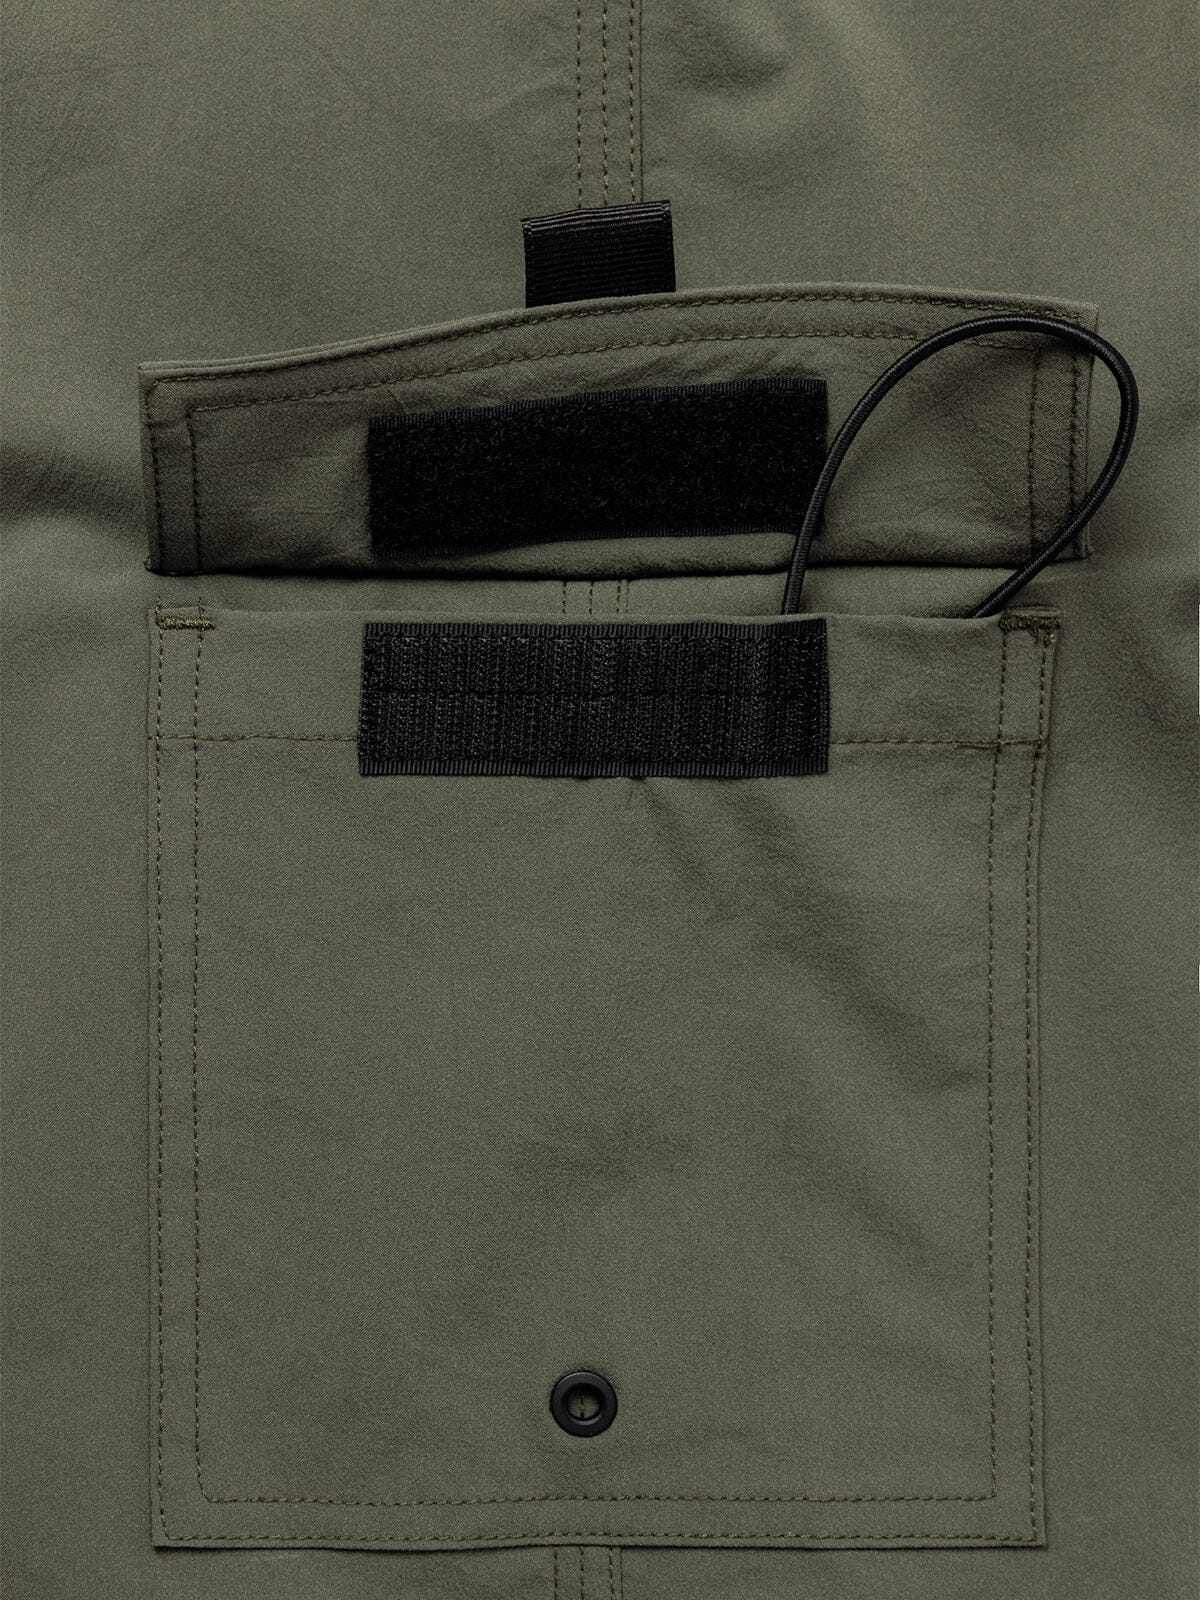 Ocho by Mission Workshop - Säänkestävät laukut ja tekniset vaatteet - San Francisco & Los Angeles - Rakennettu kestämään - ikuinen takuu